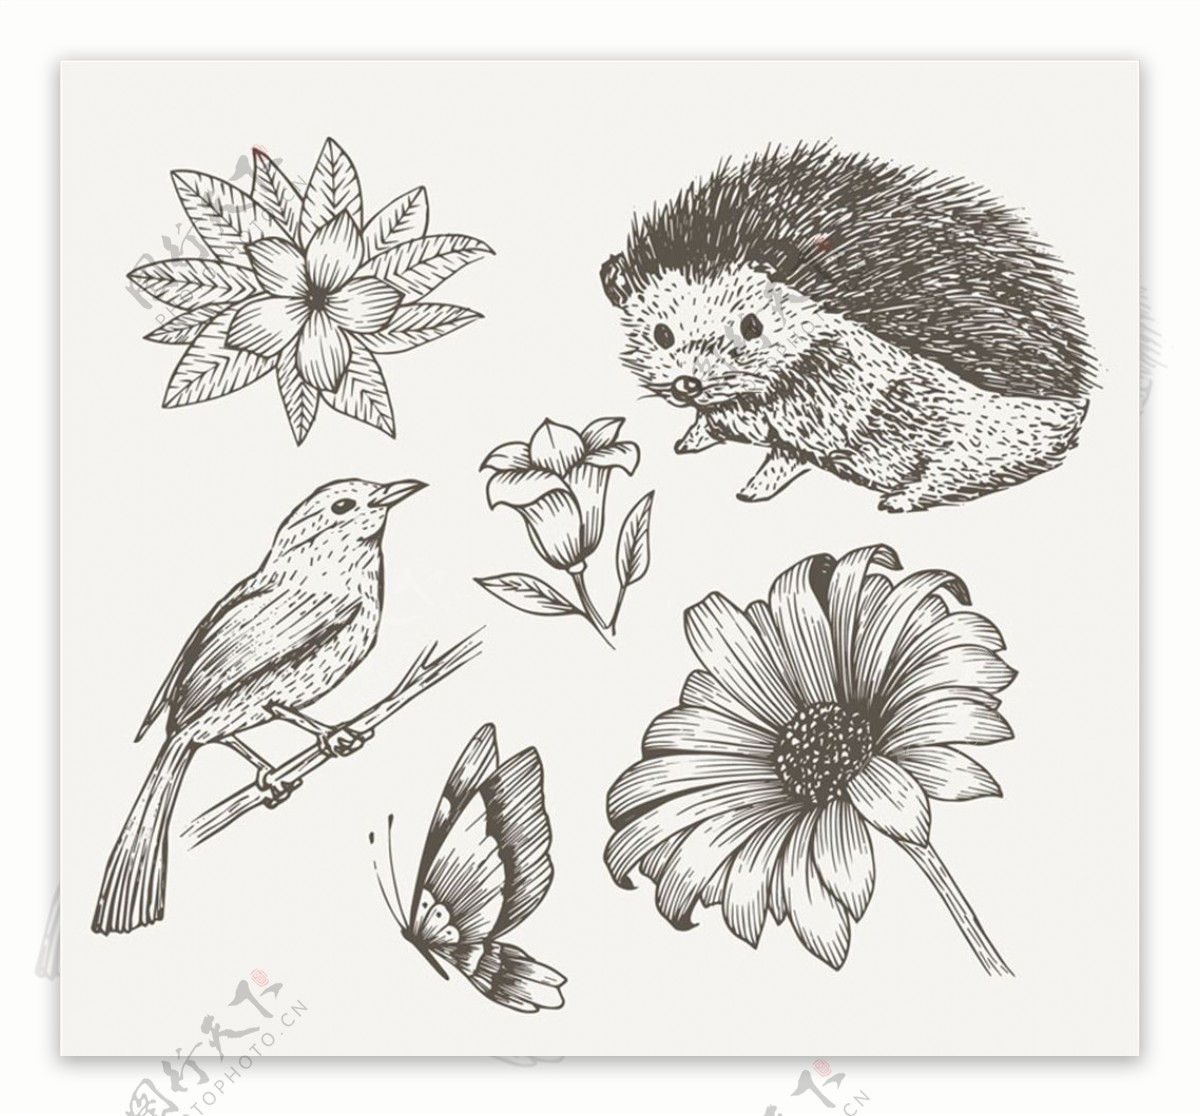 6款手绘动植物设计矢量素材